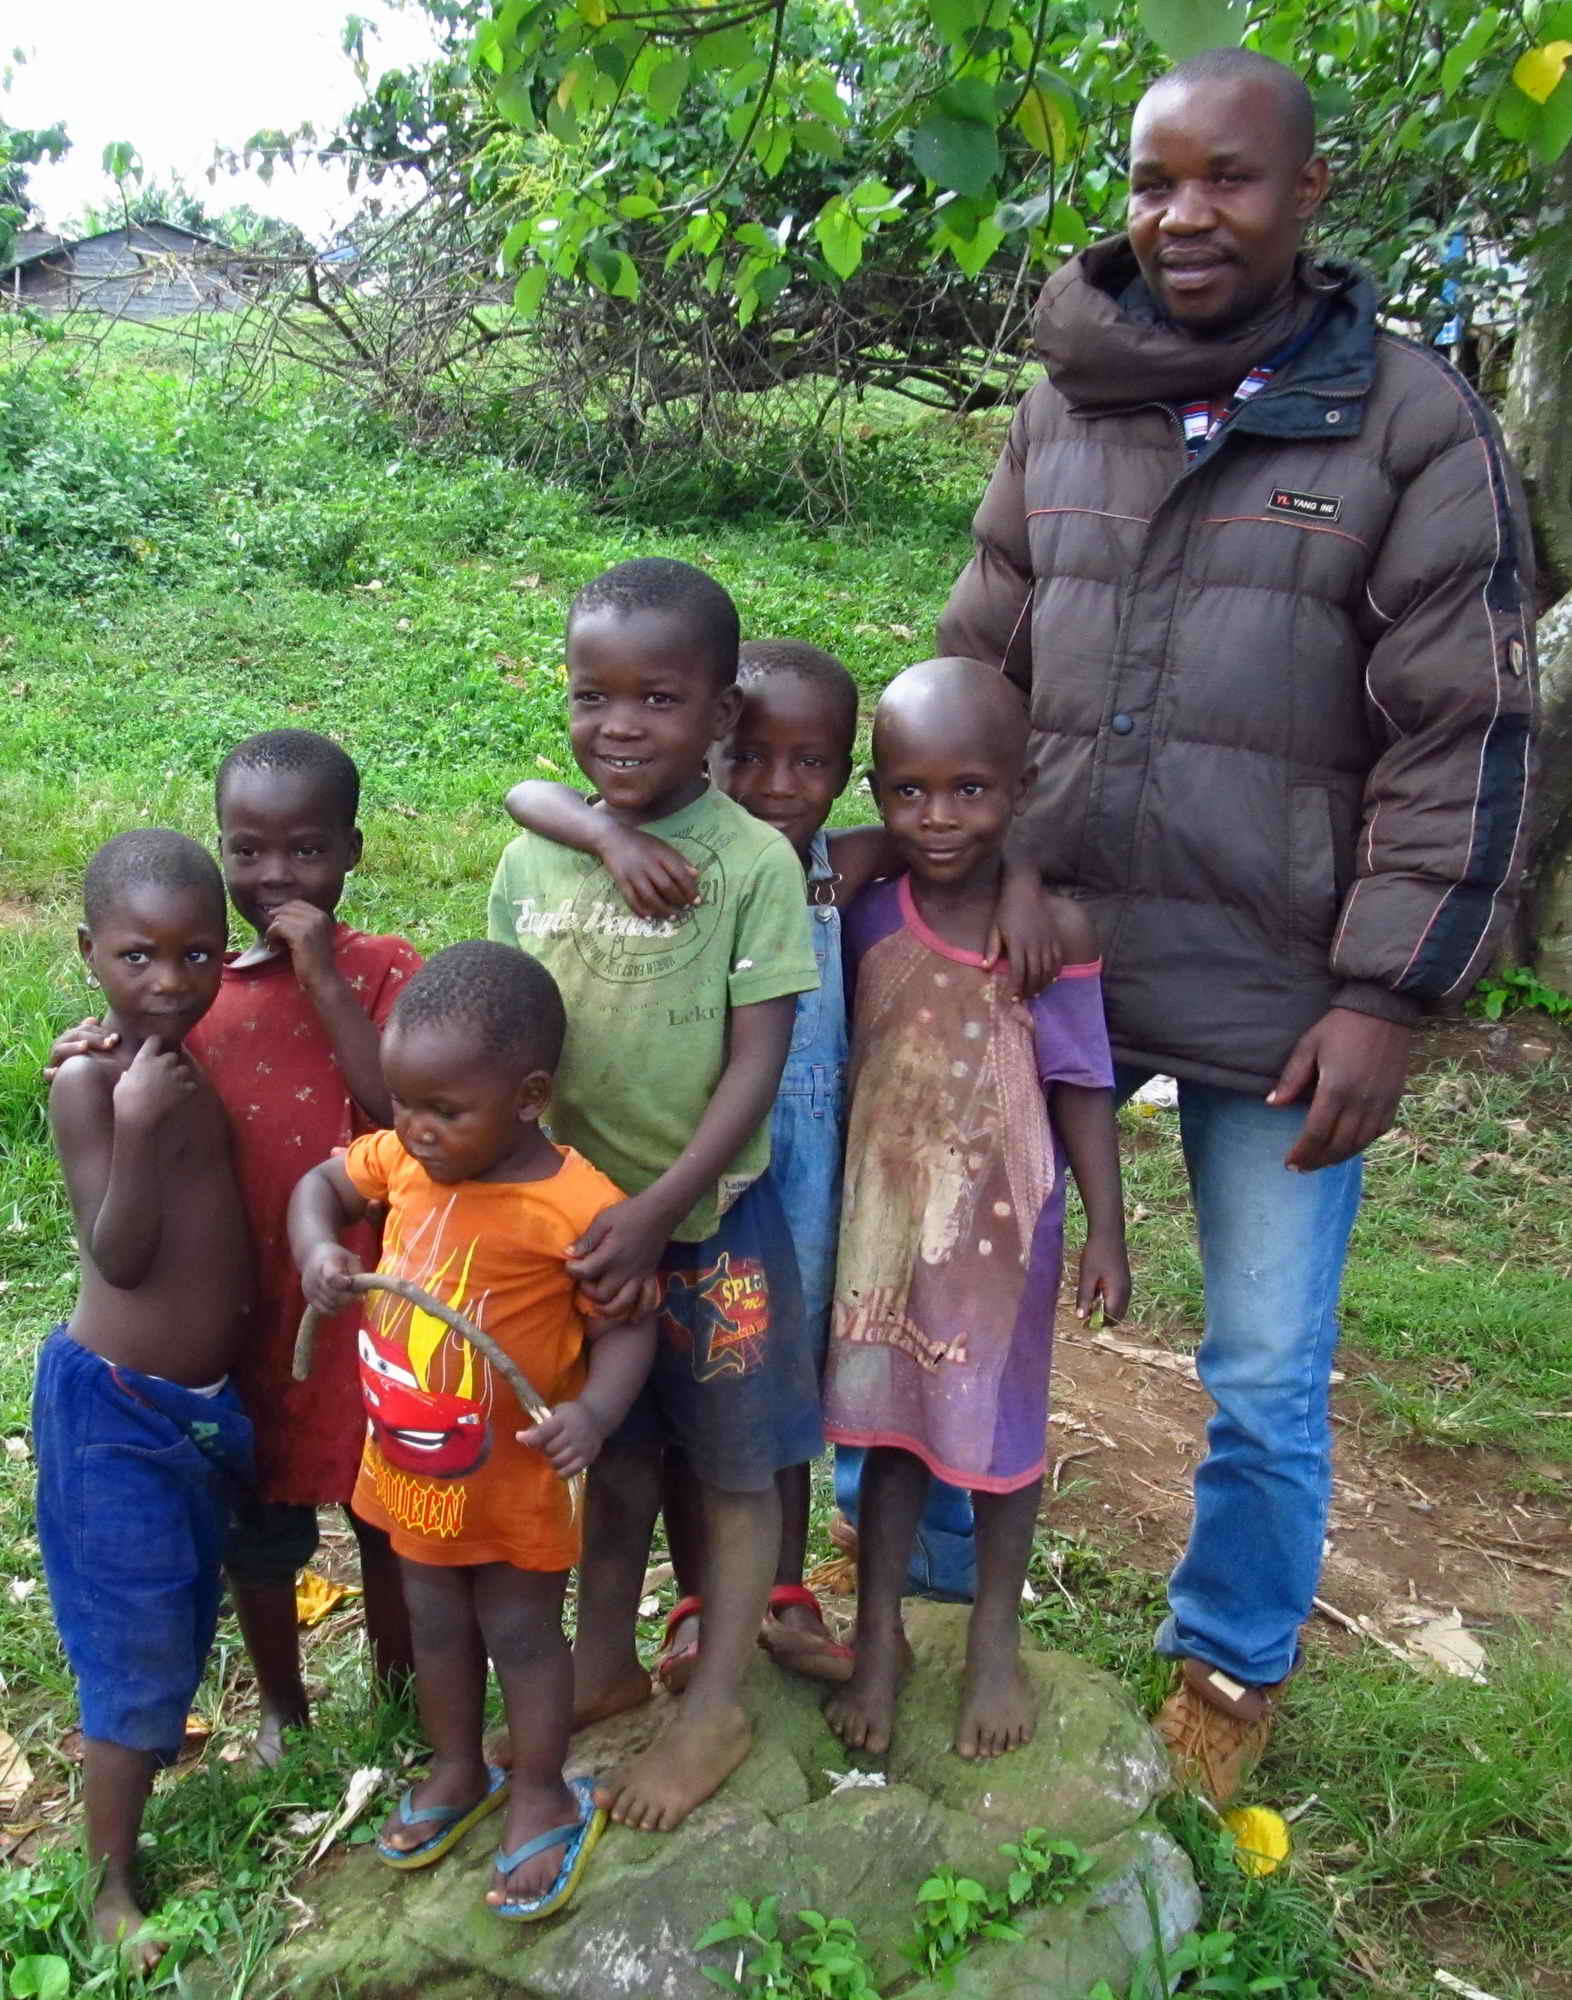 Thomson with children in the small village Dajje